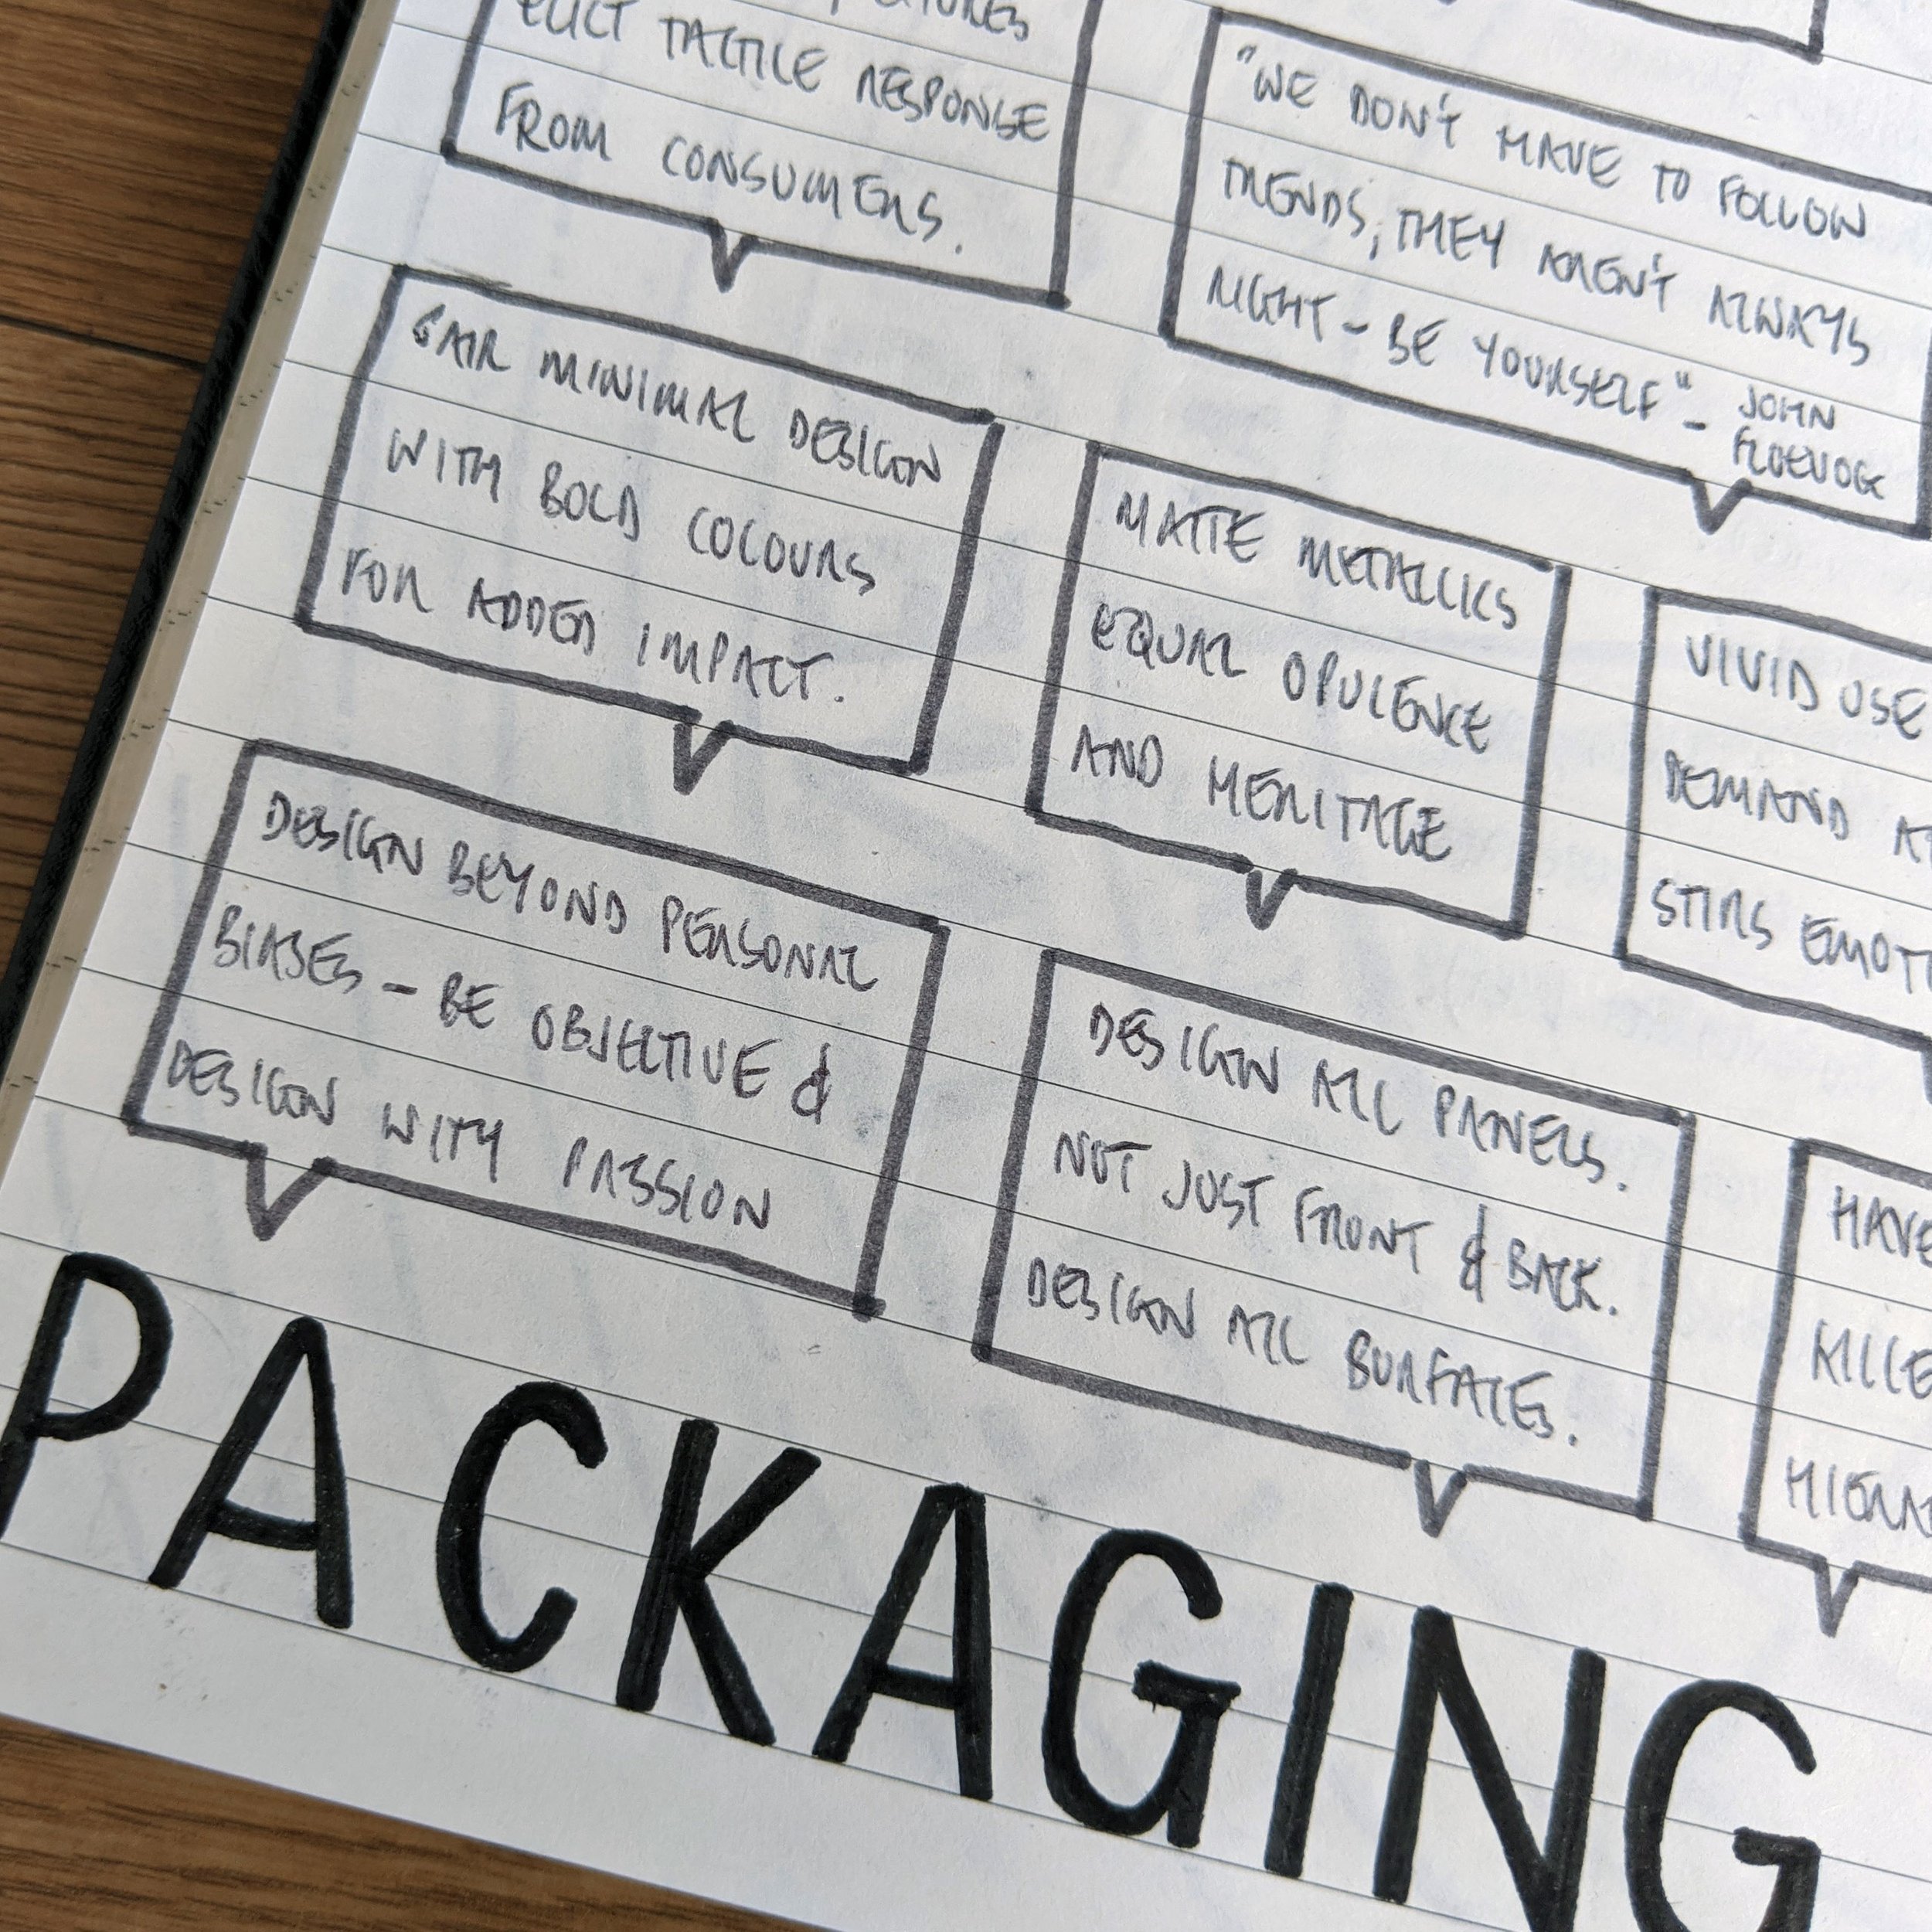 PackagingDesignTips10.jpg